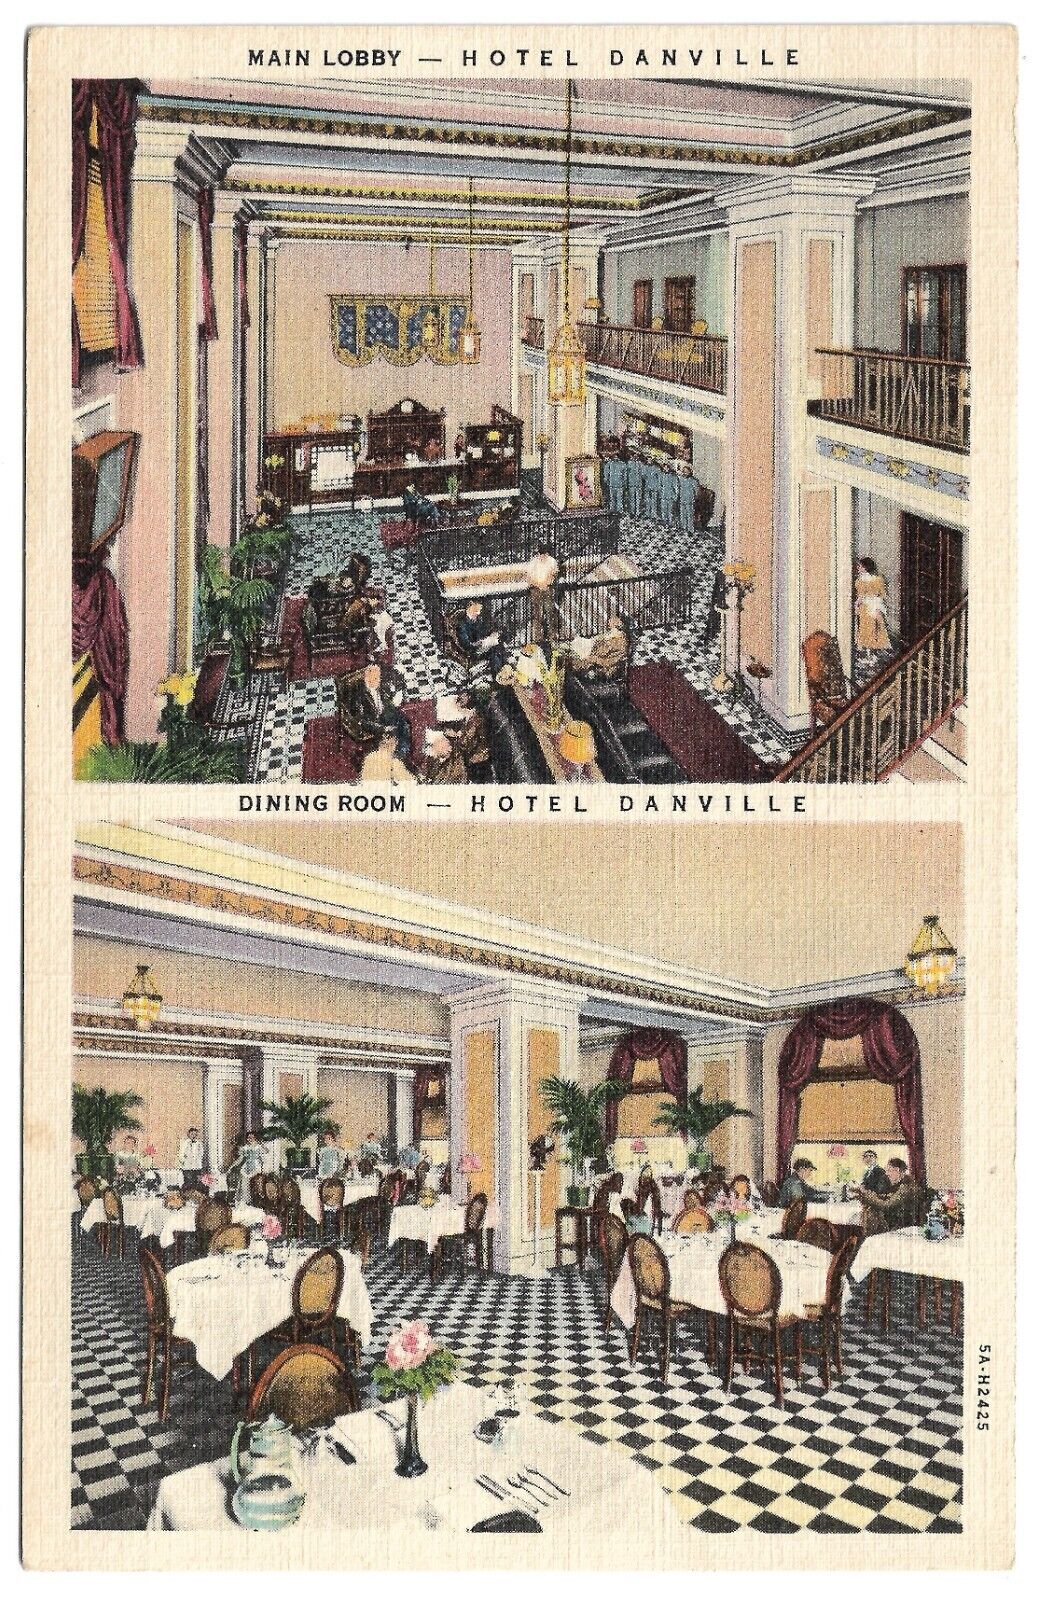 Danville Virginia VA Hotel Danville Main Lobby and Dining Room Vintage Postcard